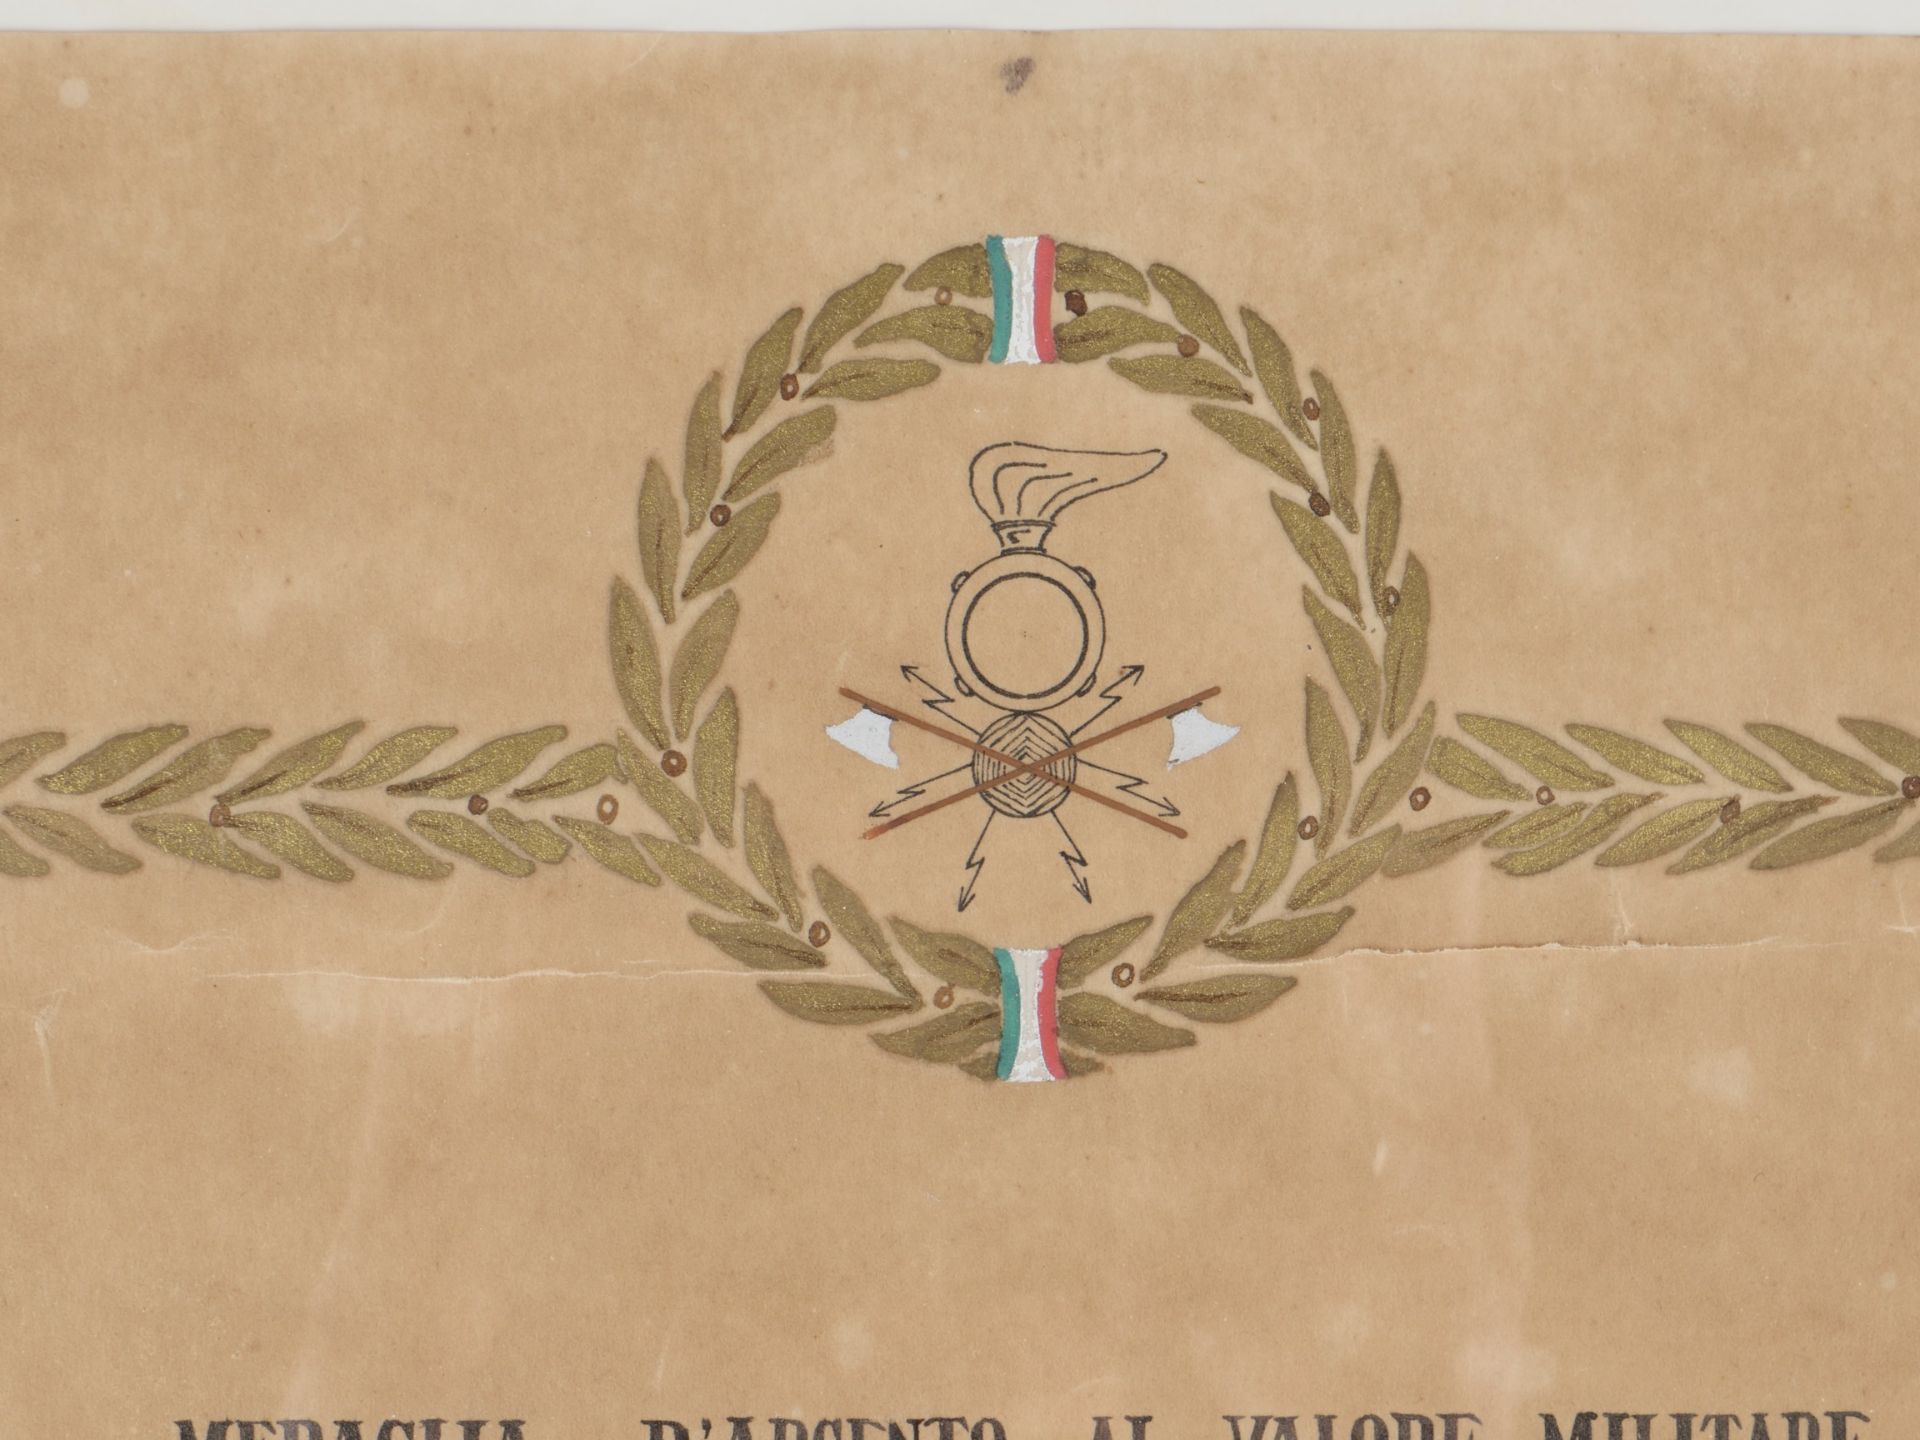 Medaille dargent pour la Valeur Militaire. Silver medal for Military Valor. - Bild 6 aus 8